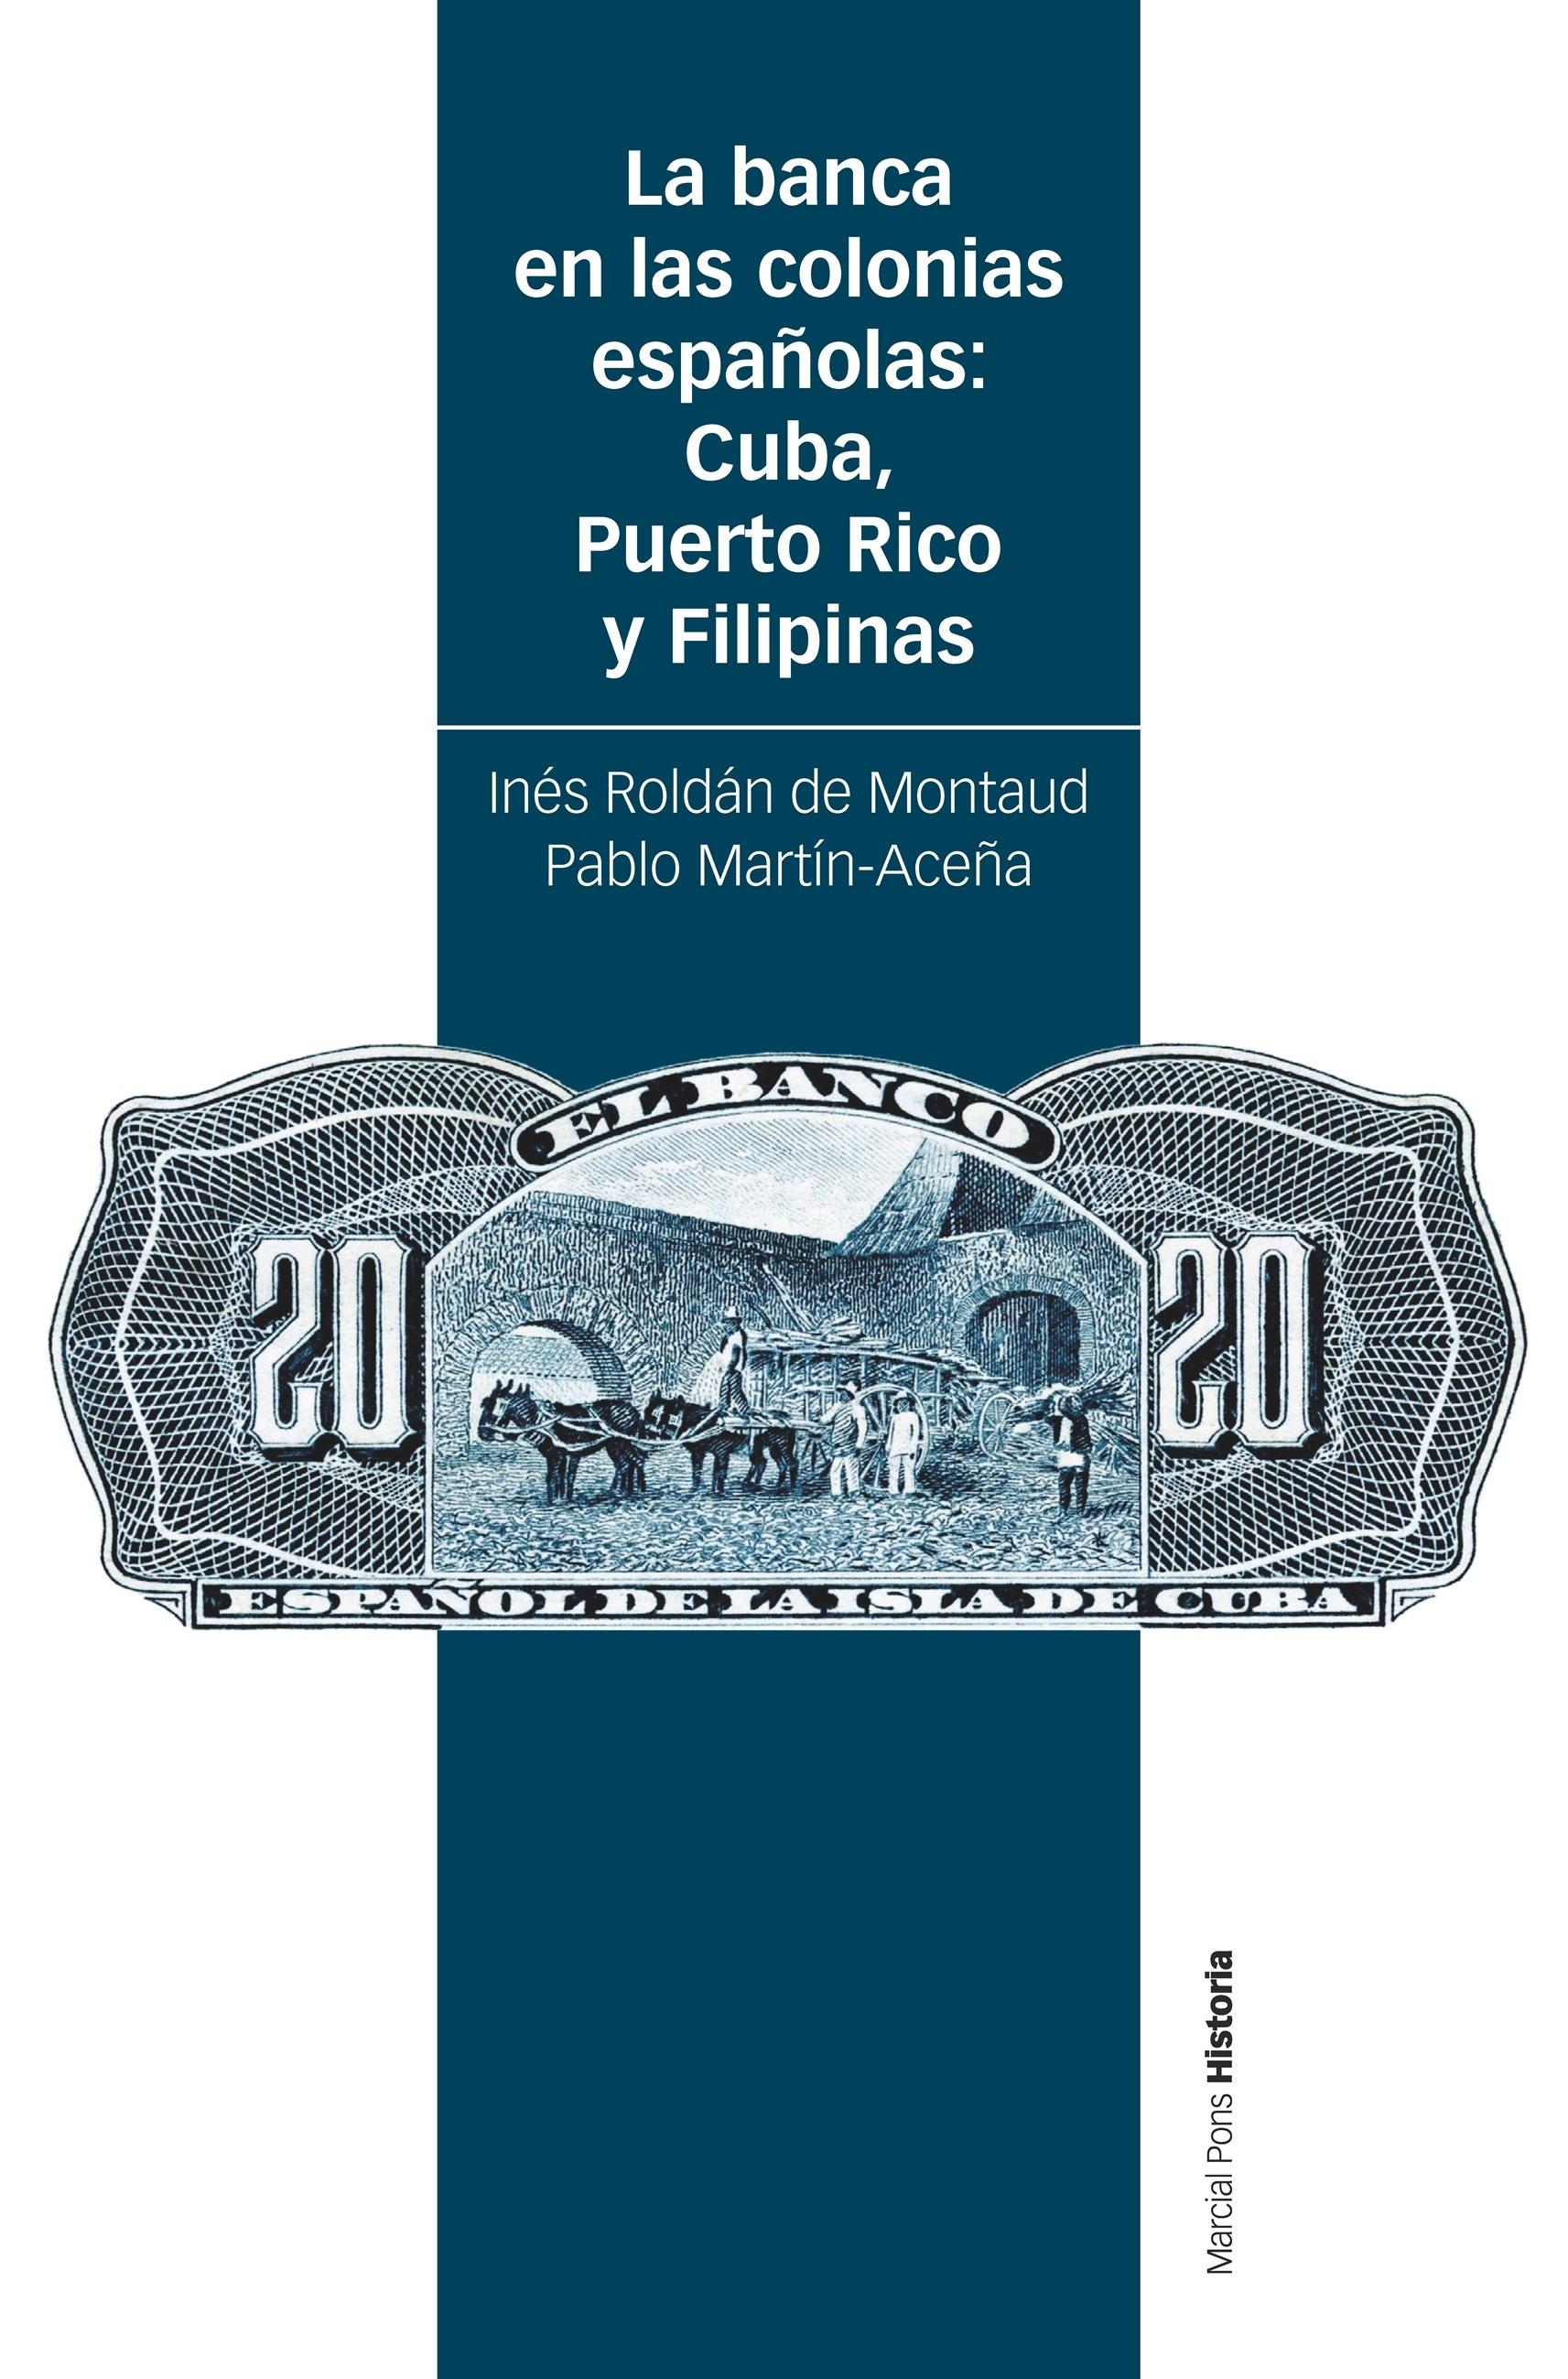 La banca en las colonias españolas "Cuba, Puerto Rico y Filipinas"